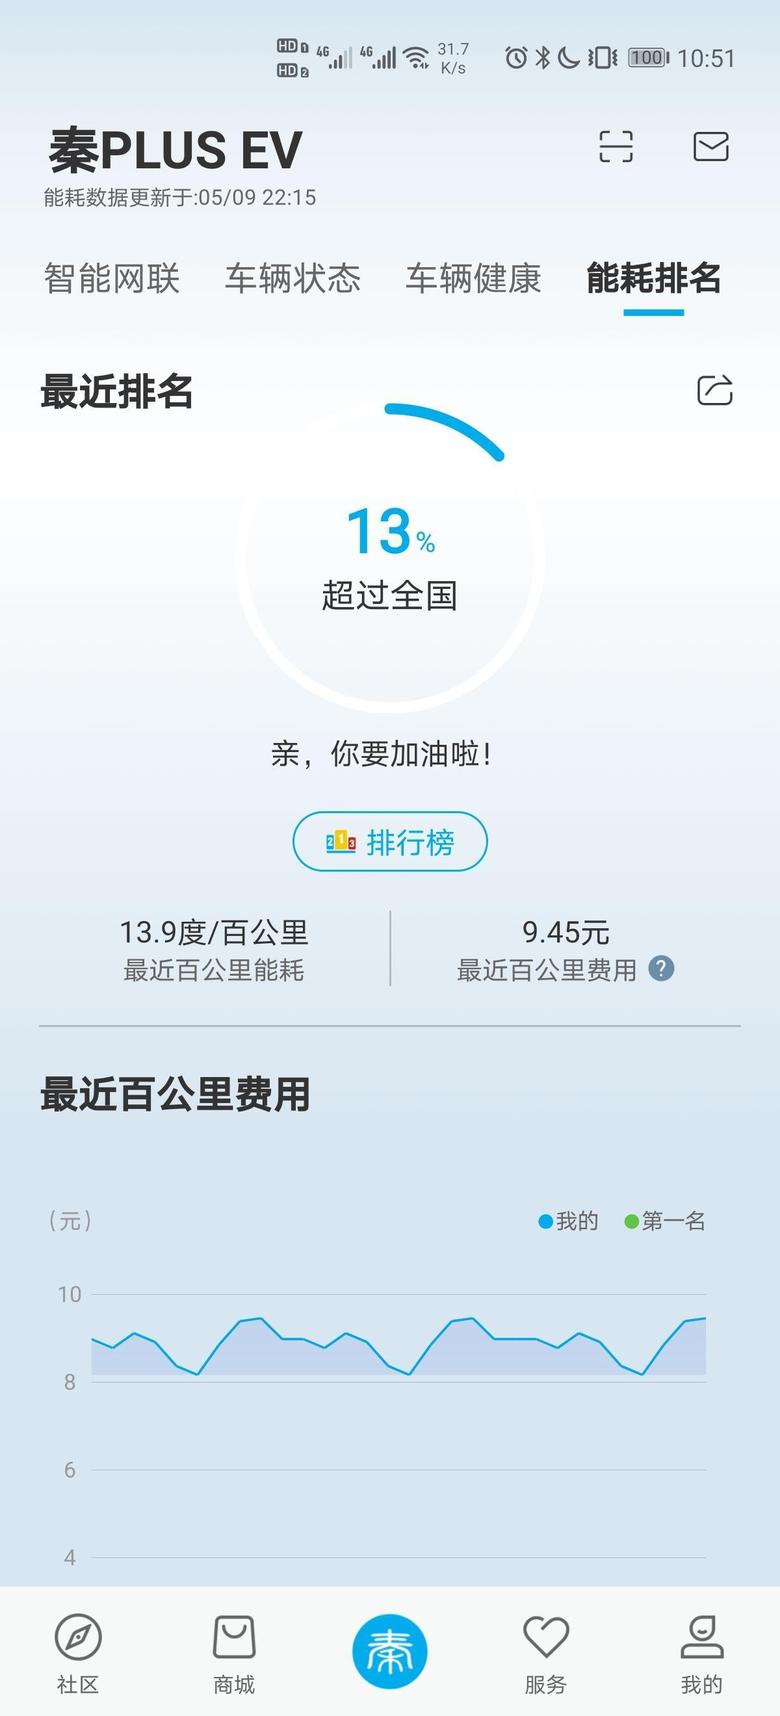 秦plus ev坐标上海，我的能耗13.9，大家能耗多少？还有你们低速电机声大吗？